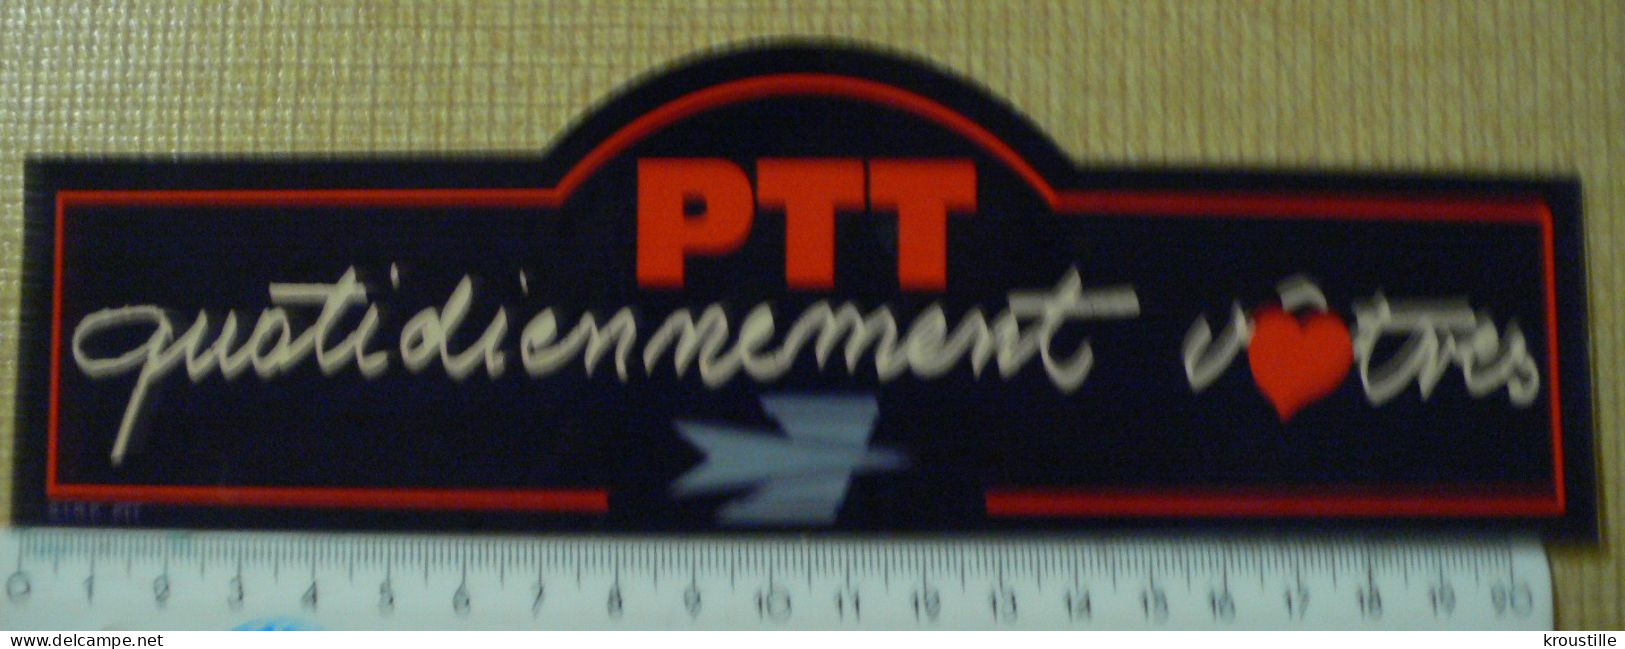 AUTOCOLLANT PTT - QUOTIDIENNEMENT VOTRES - Autocollants